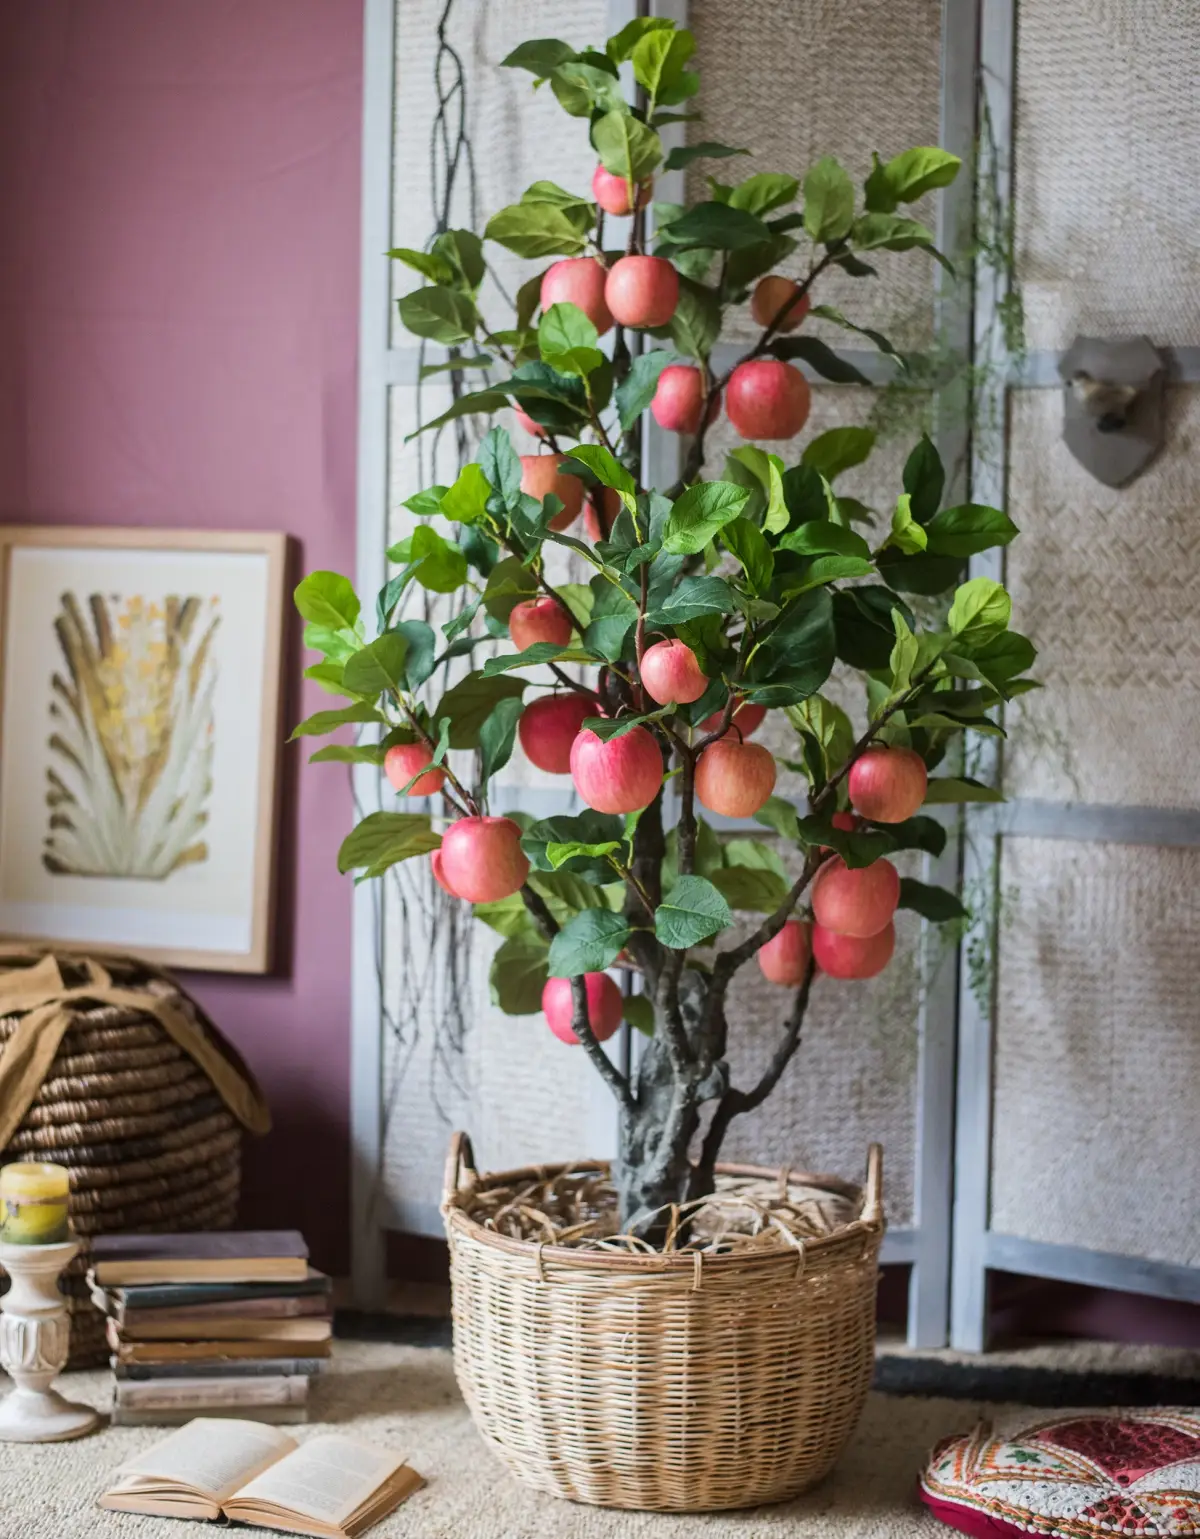 kann ein apfelbaum im topf ueberwintern apfelbaum im wohnzimmer roter apfel baum in korb im haus dekorativ